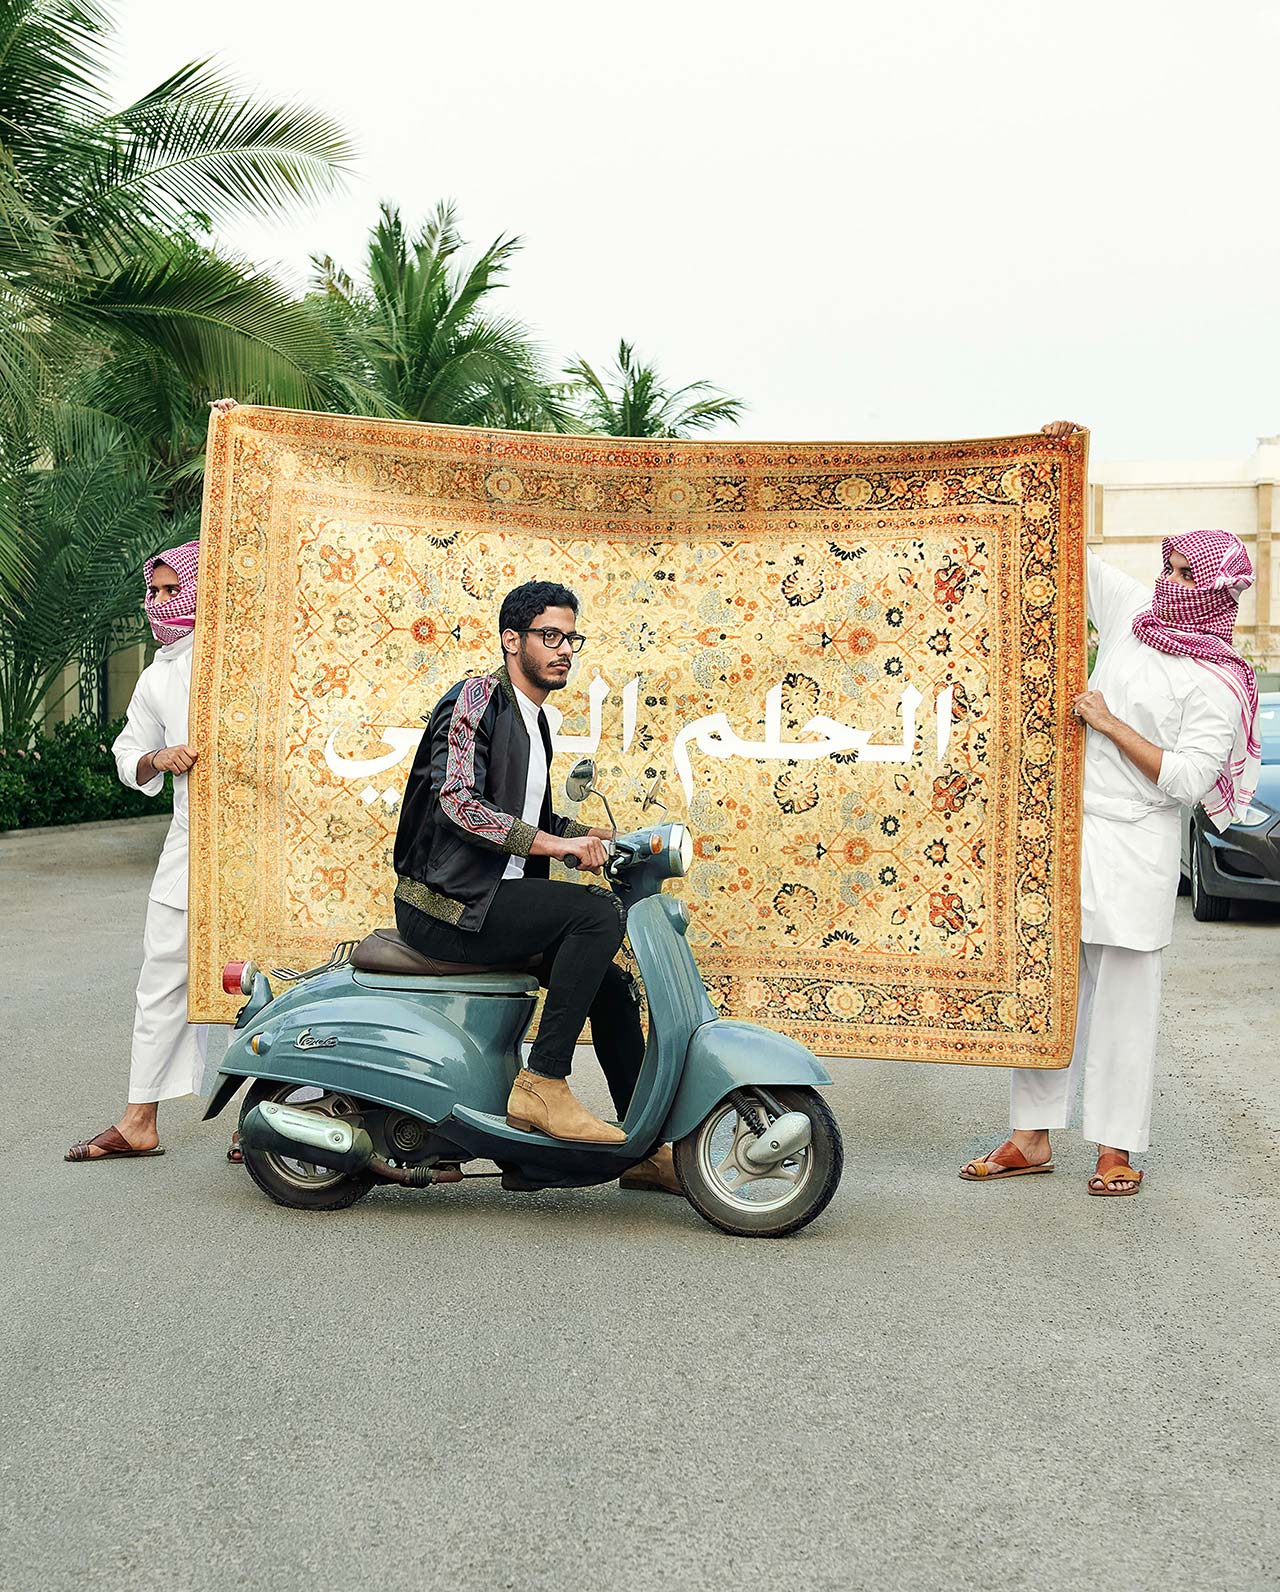 Ali Chaâaban in collaboration withÂ Â Saudi Arabian designer Mohammed Khoja of Hindamme,Â The Arabic DreamÂ seriesÂ featuring HindammeâsÂ Fall 2017Â collection, 2017.Â Photo byÂ Rayan Nawawi.